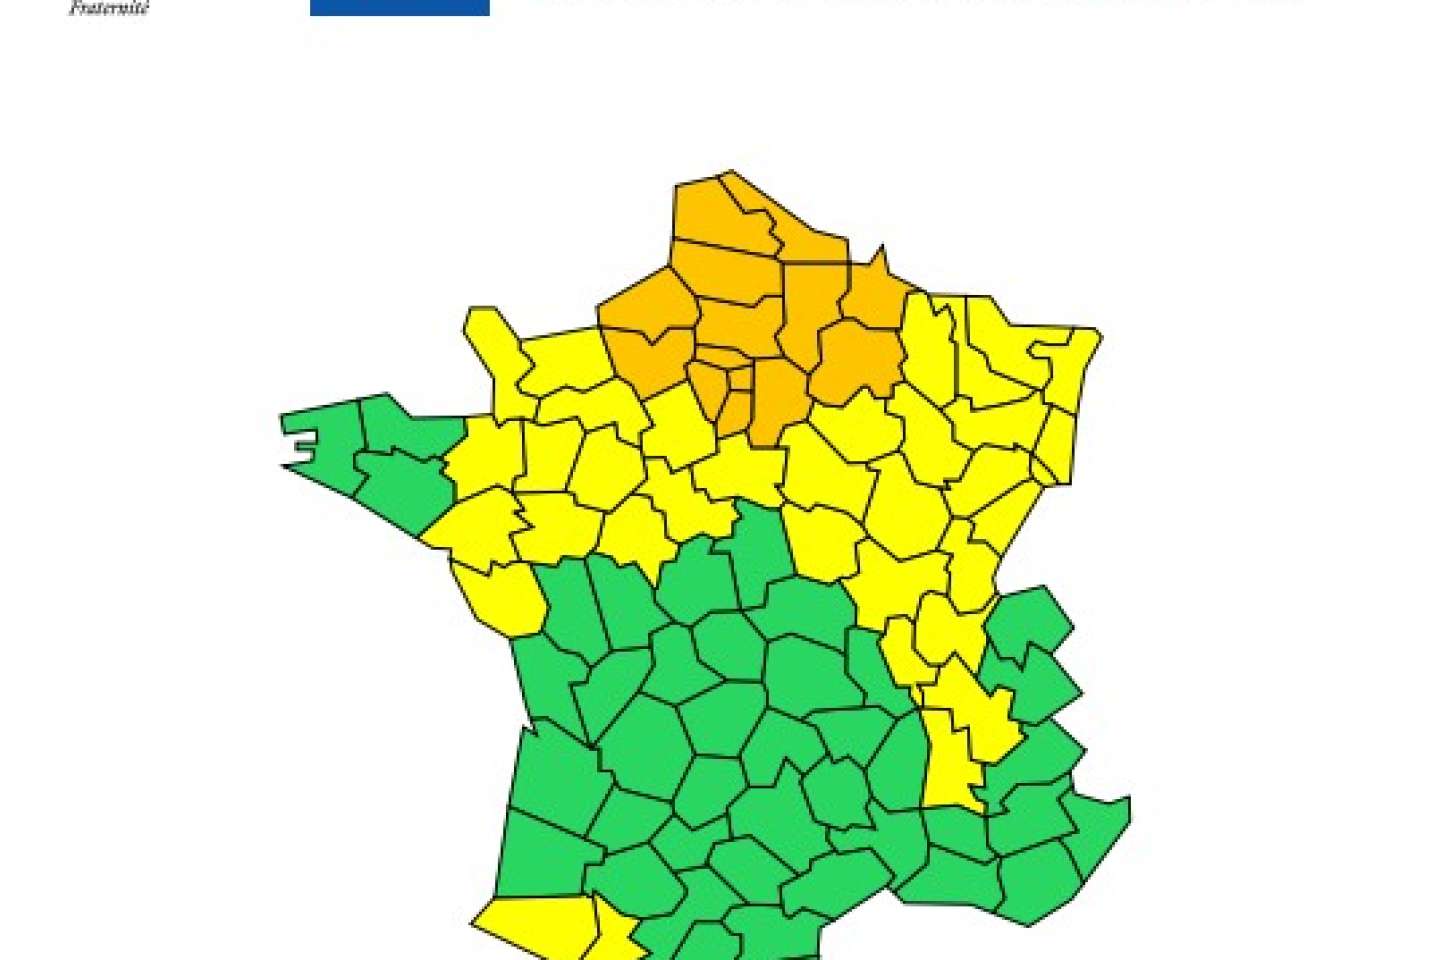 De forts orages prévus en Ile-de-France, dans les Hauts-de-France et dans tout le nord-ouest de la France